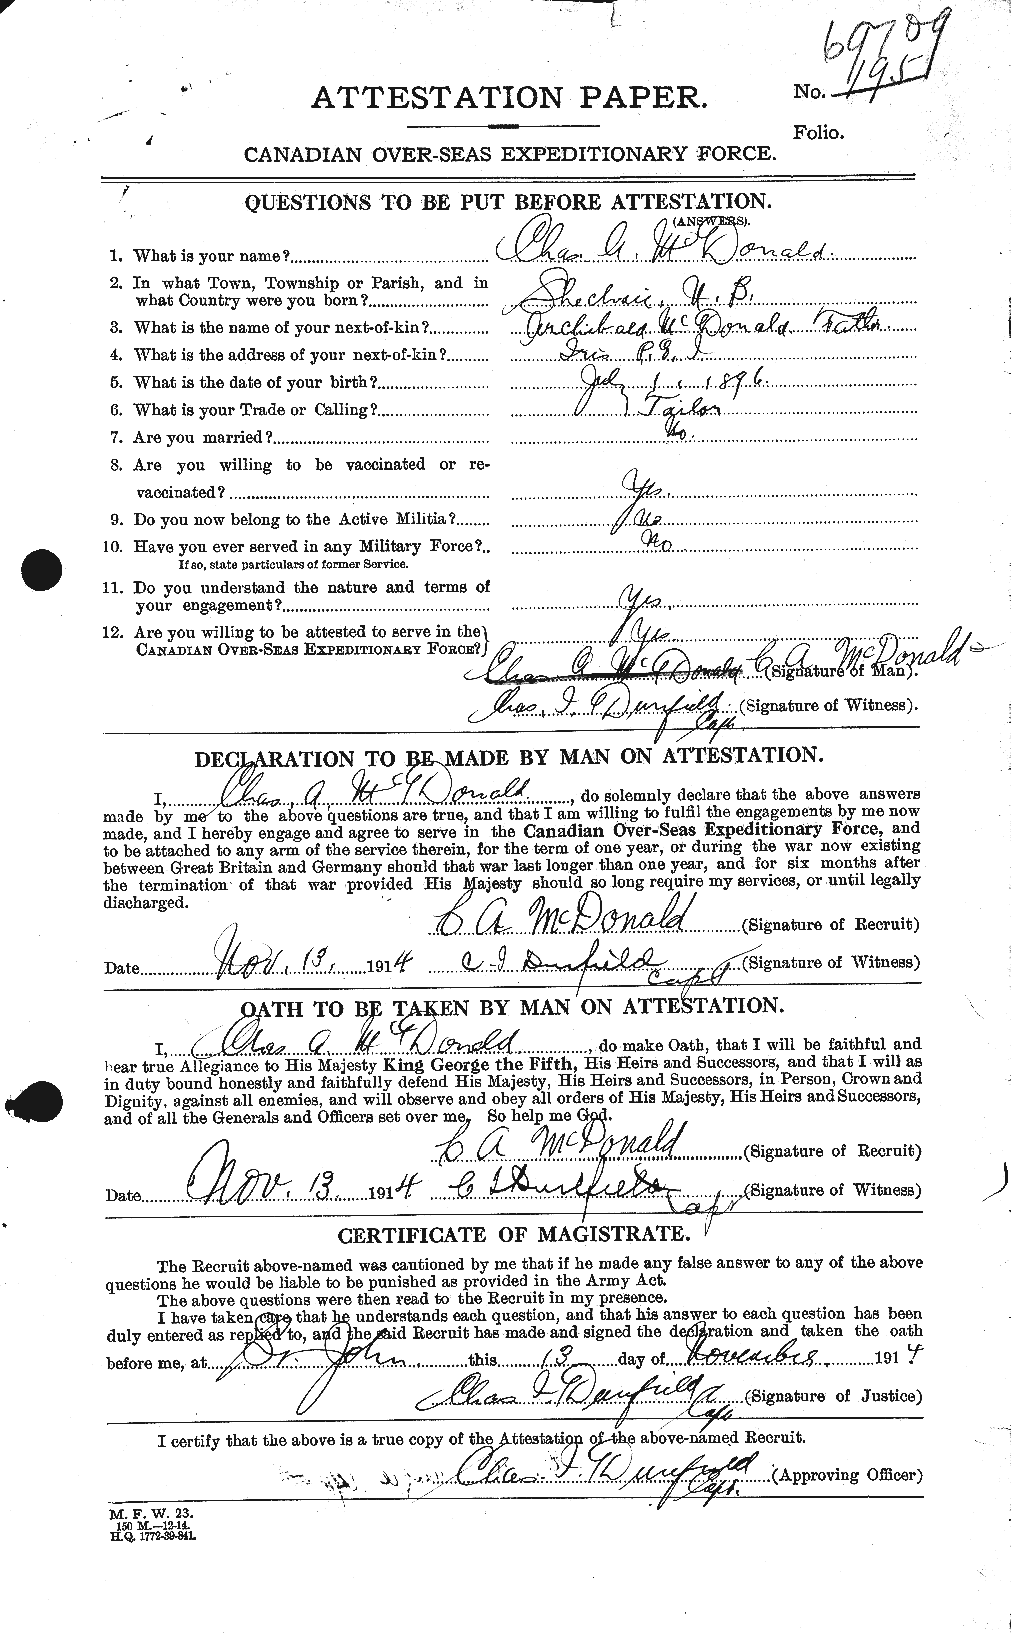 Dossiers du Personnel de la Première Guerre mondiale - CEC 136434a